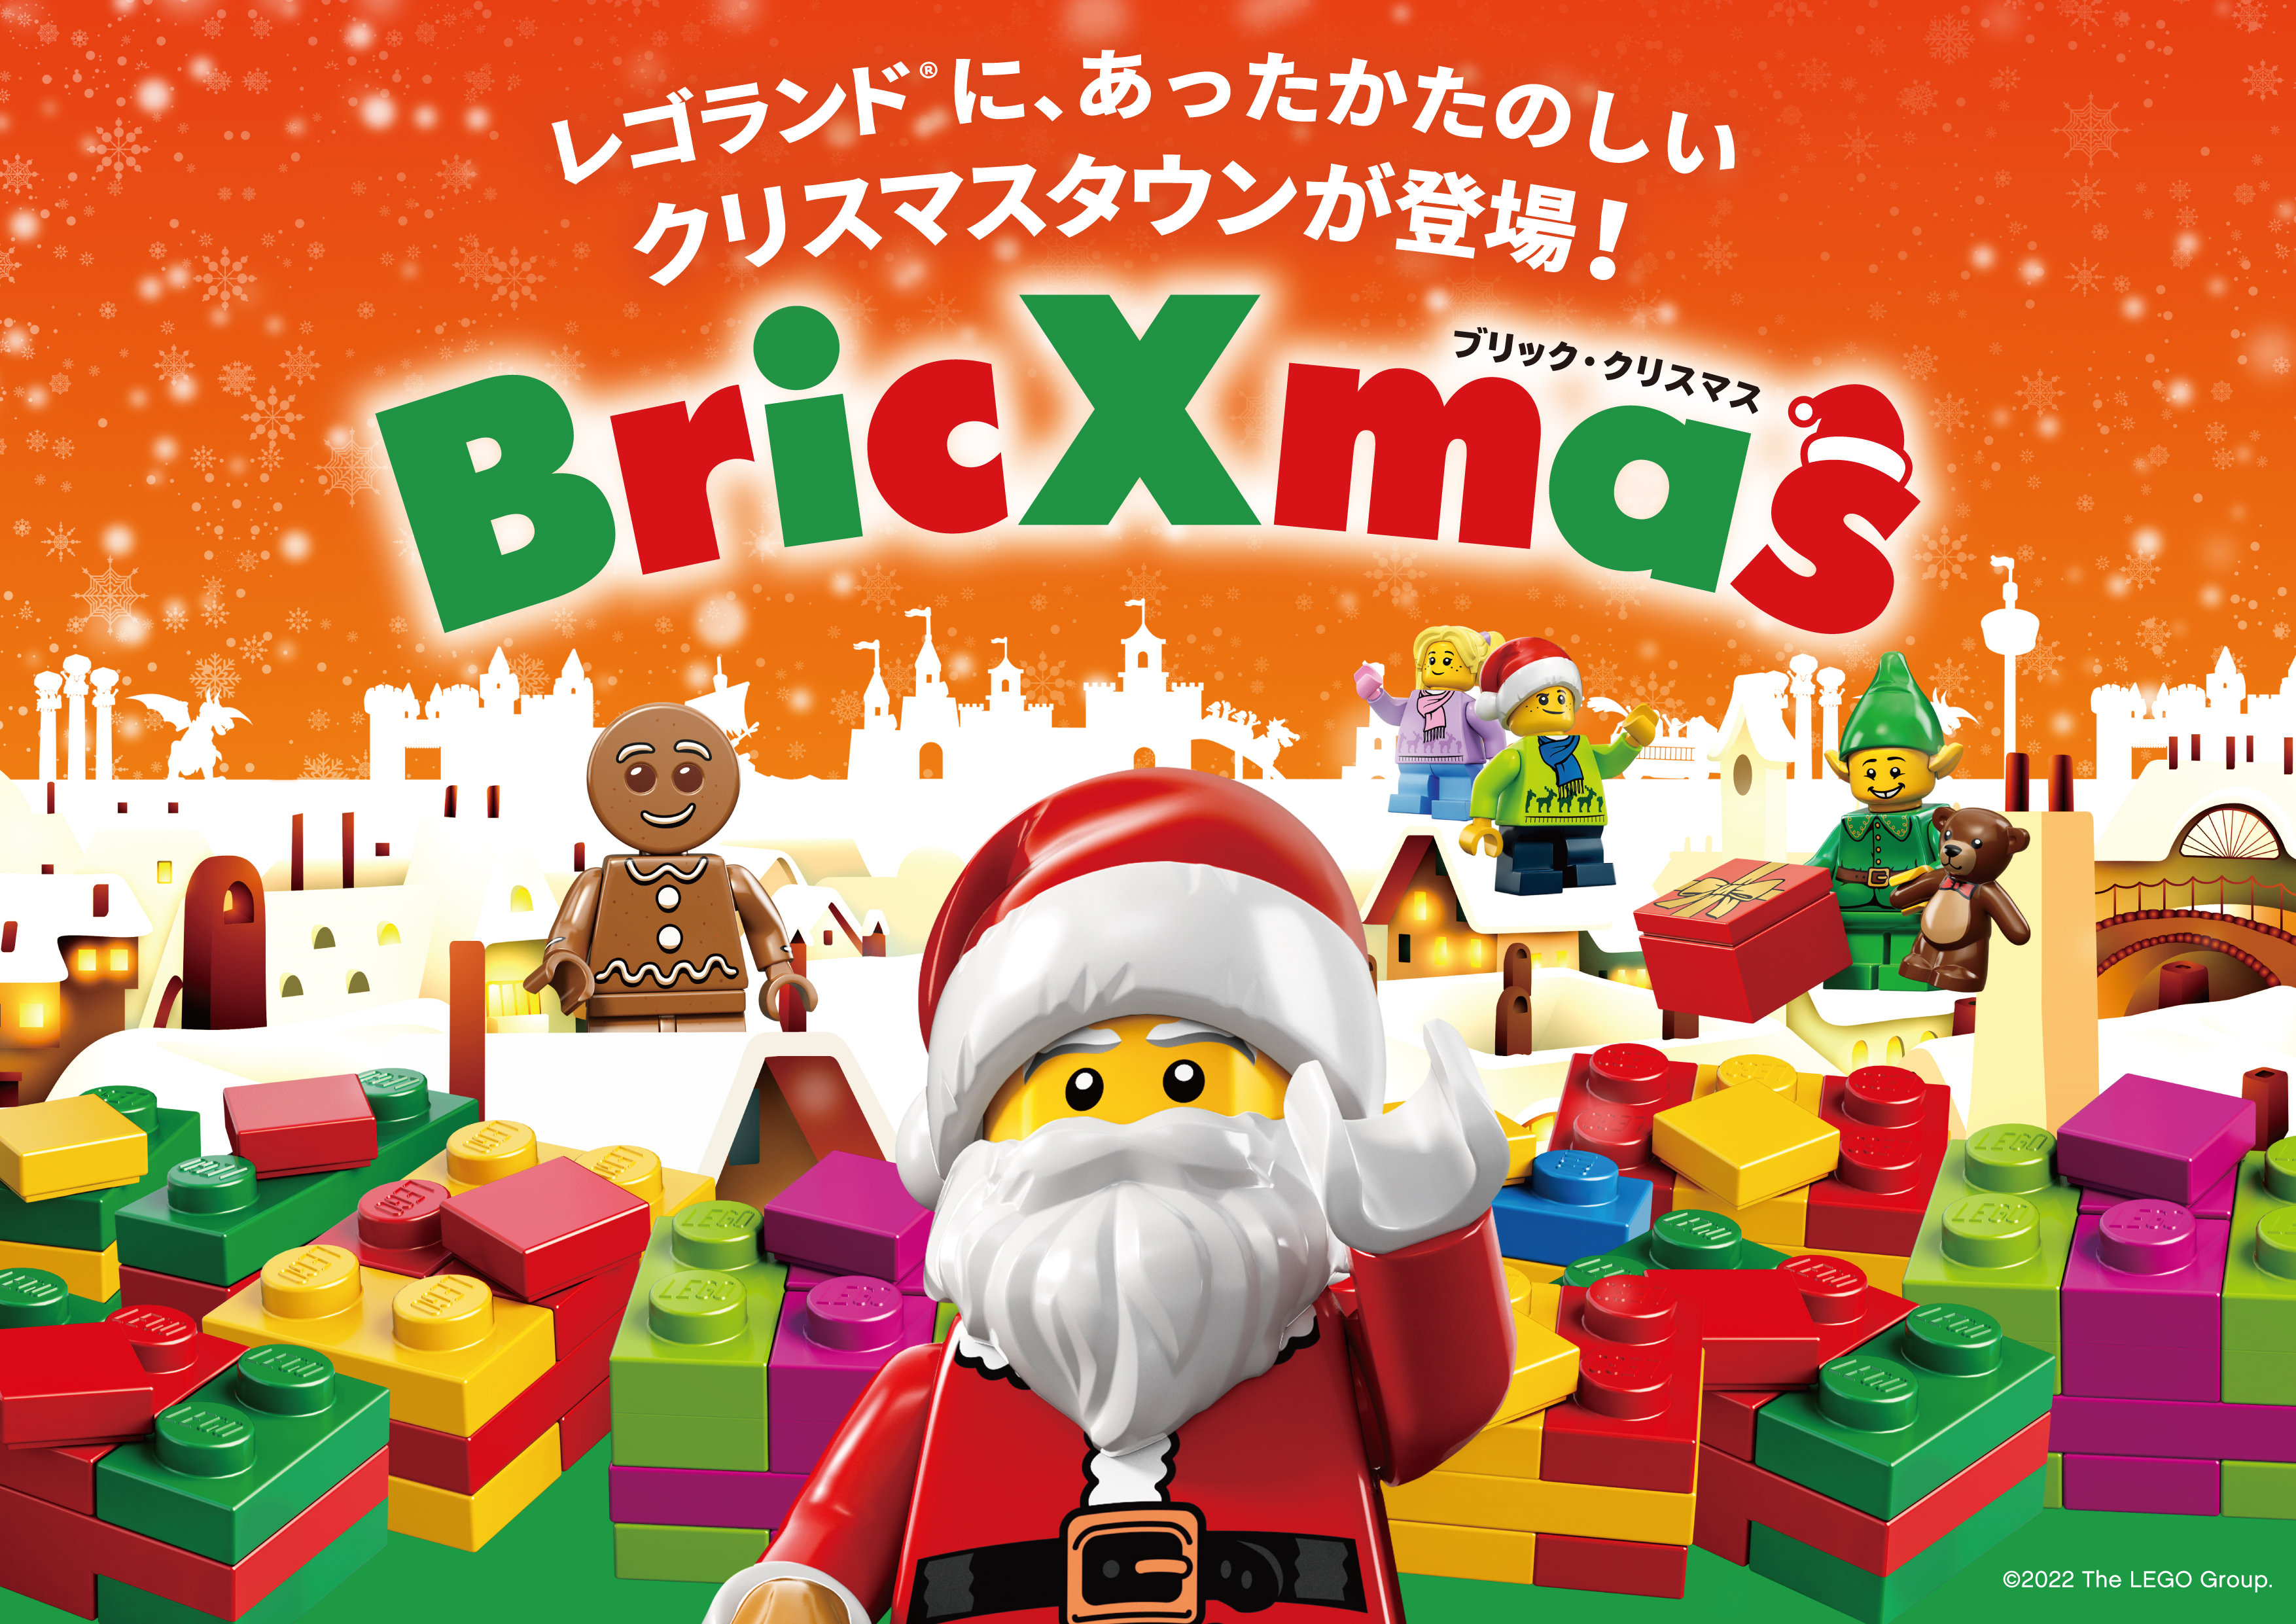 レゴランド ジャパン リゾート22クリスマスは エルフと一緒に 絵本 の世界へ 幻想的な スノードーム 巨大ガチャガチャが楽しめる クリスマスタウン が登場 Legoland Japan合同会社のプレスリリース